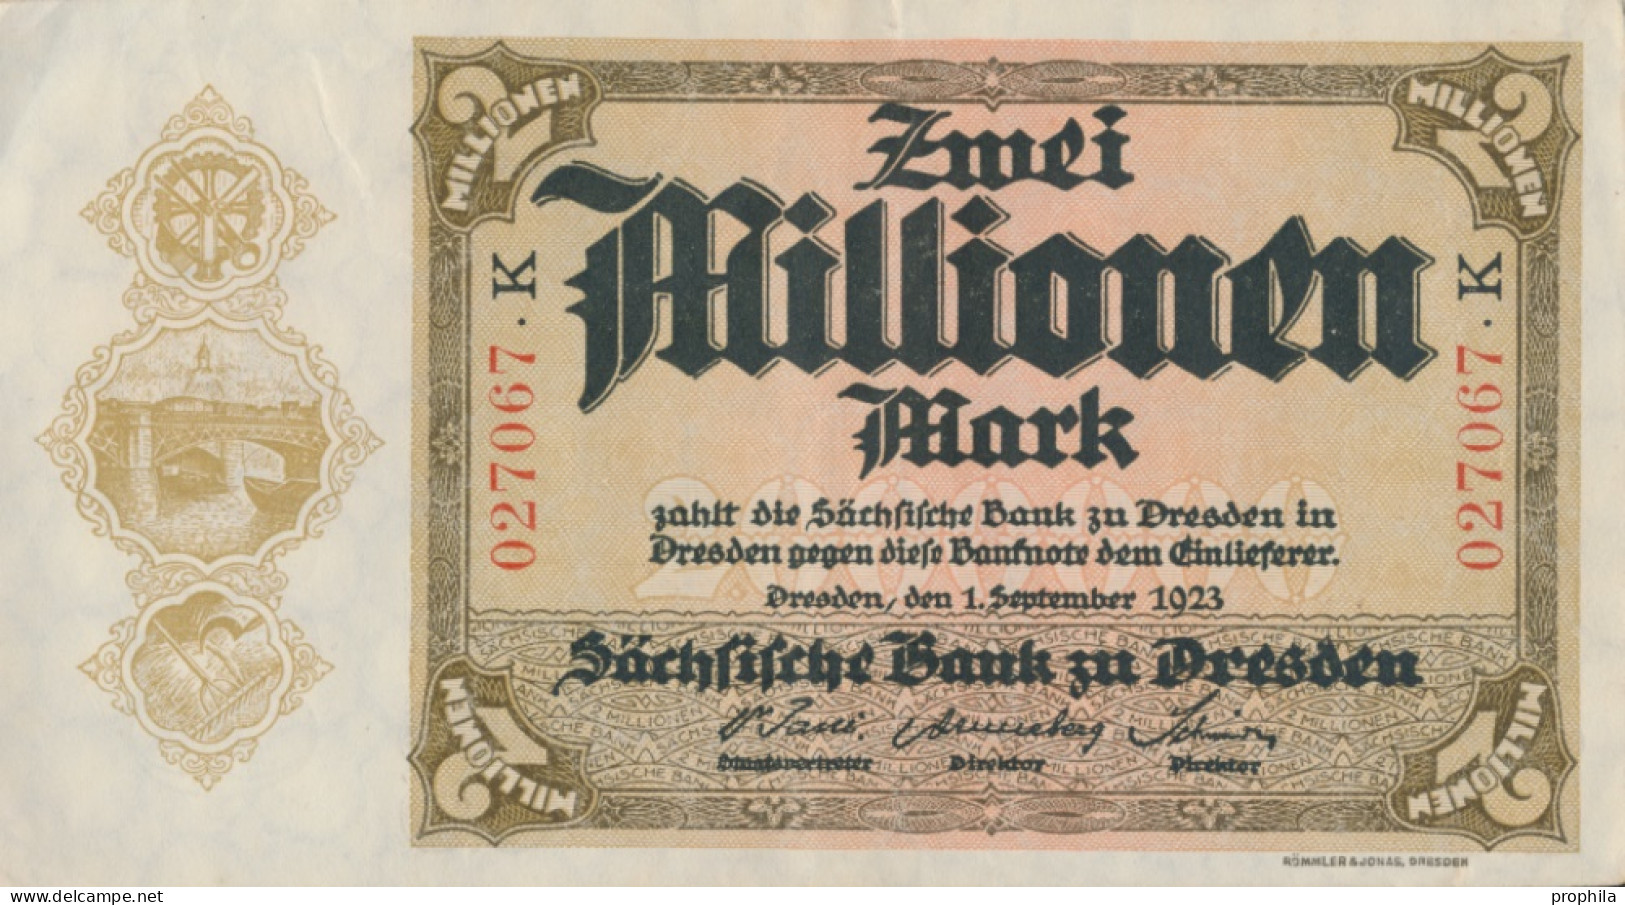 Sachsen Rosenbg: SAX20 Länderbanknote Sachsen Gebraucht (III) 1923 2 Mio. Mark (10288531 - 2 Millionen Mark